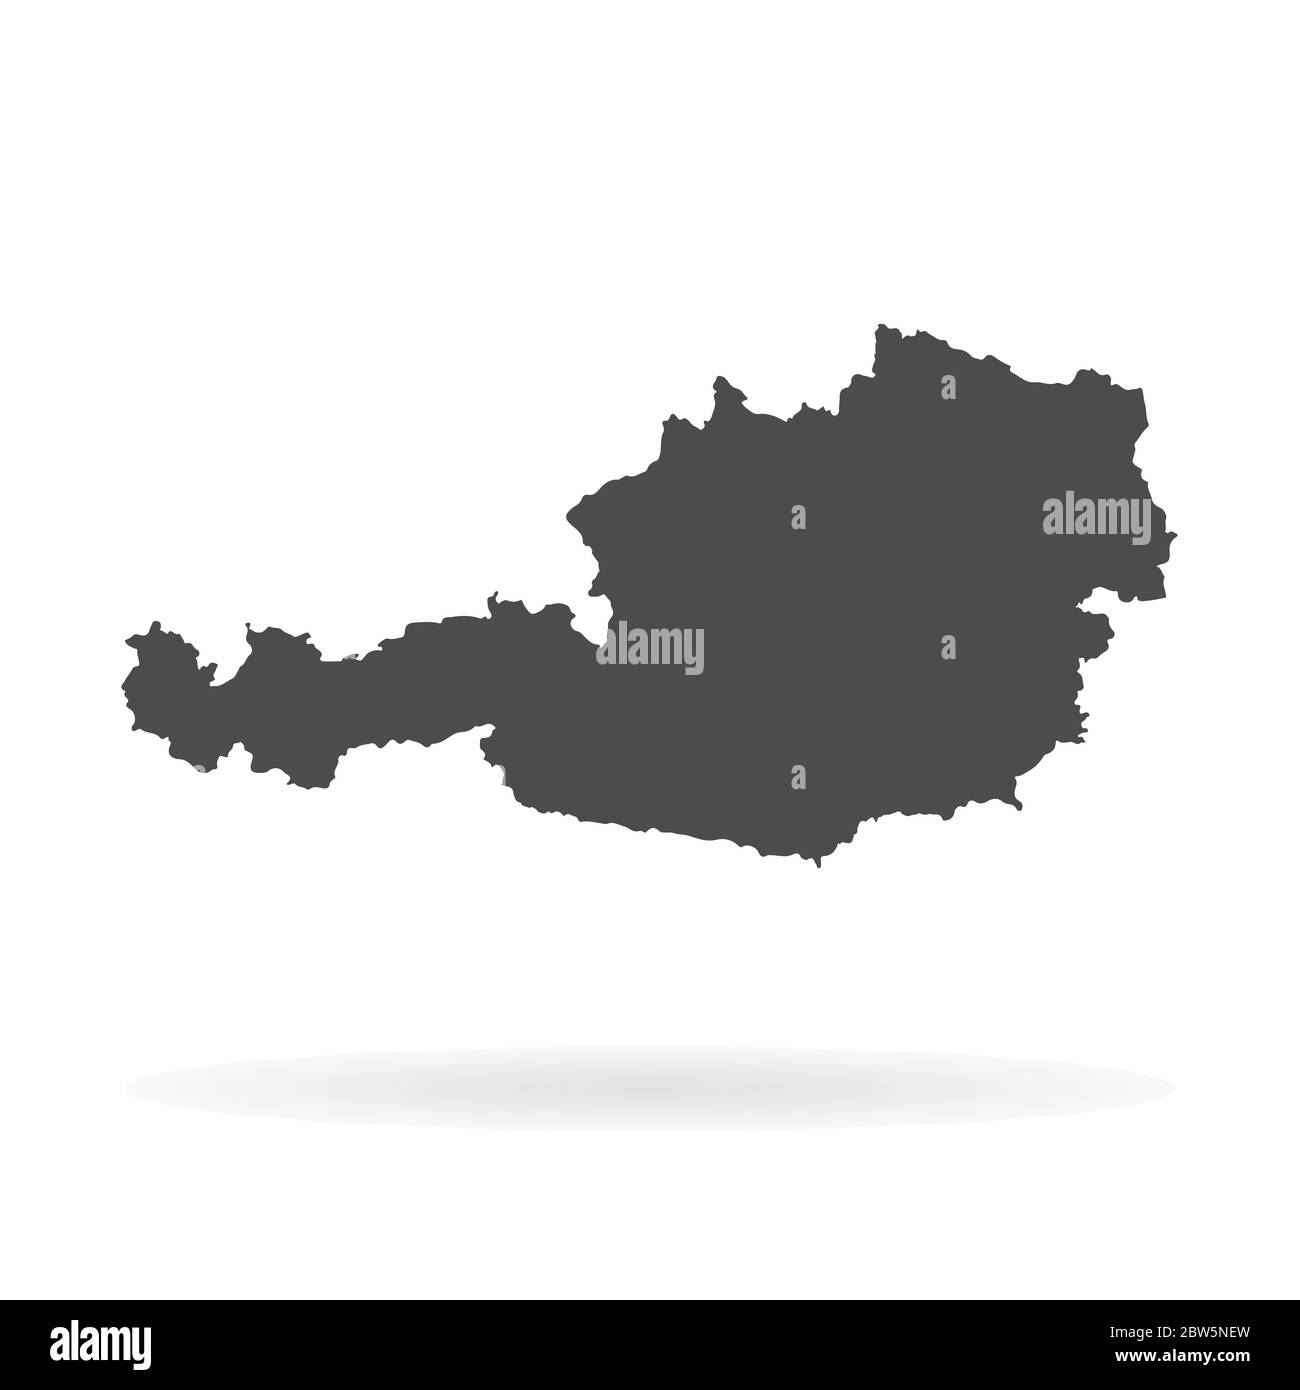 Vektorkarte Österreich. Isolierte Vektorgrafik. Schwarz auf weißem Hintergrund. EPS 10-Abbildung. Stock Vektor